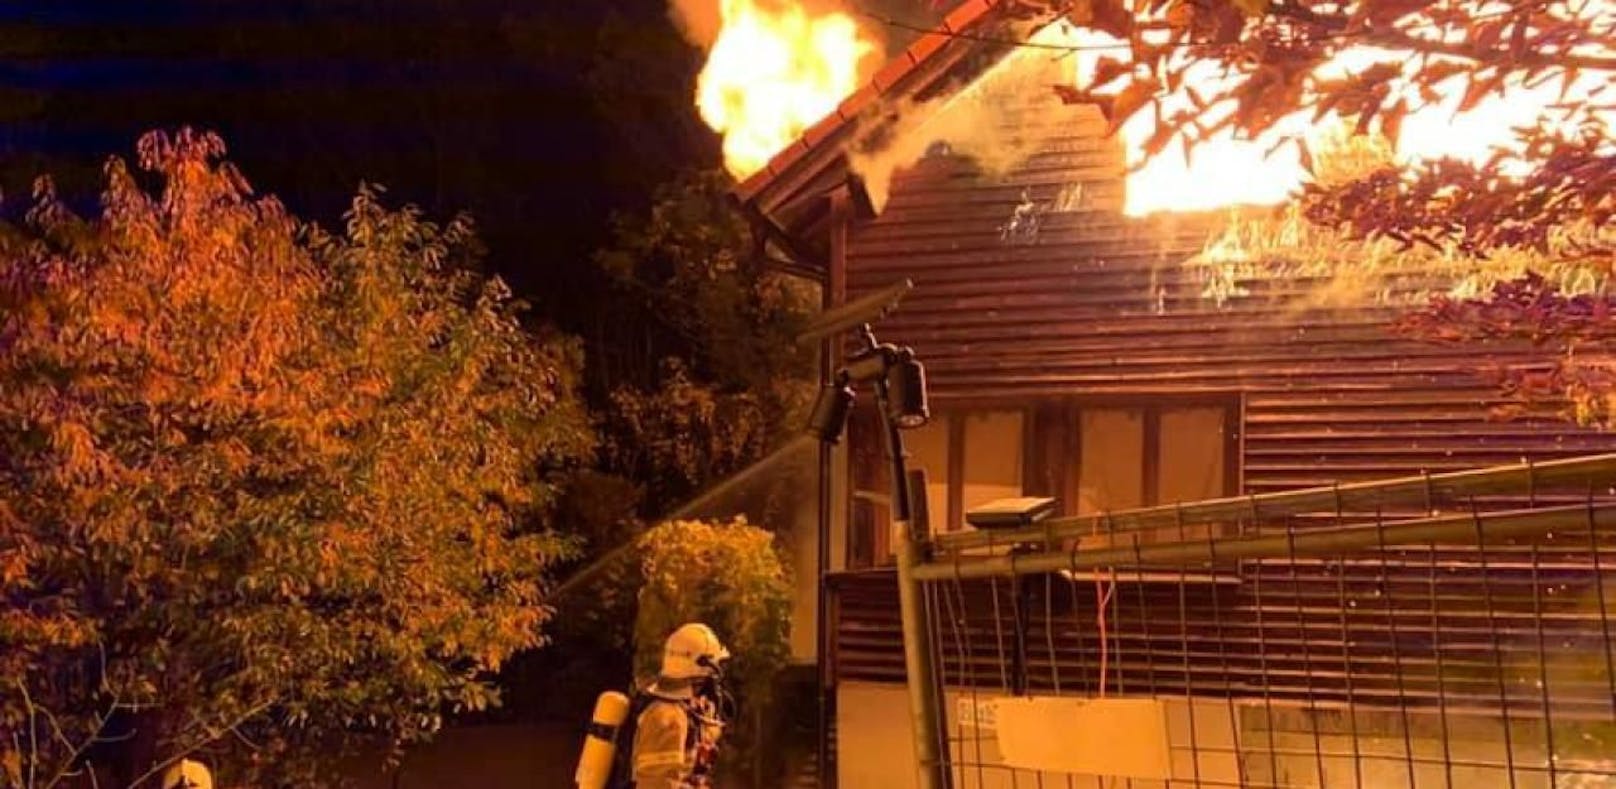 Laab im Walde: Wohnhaus stand in Flammen